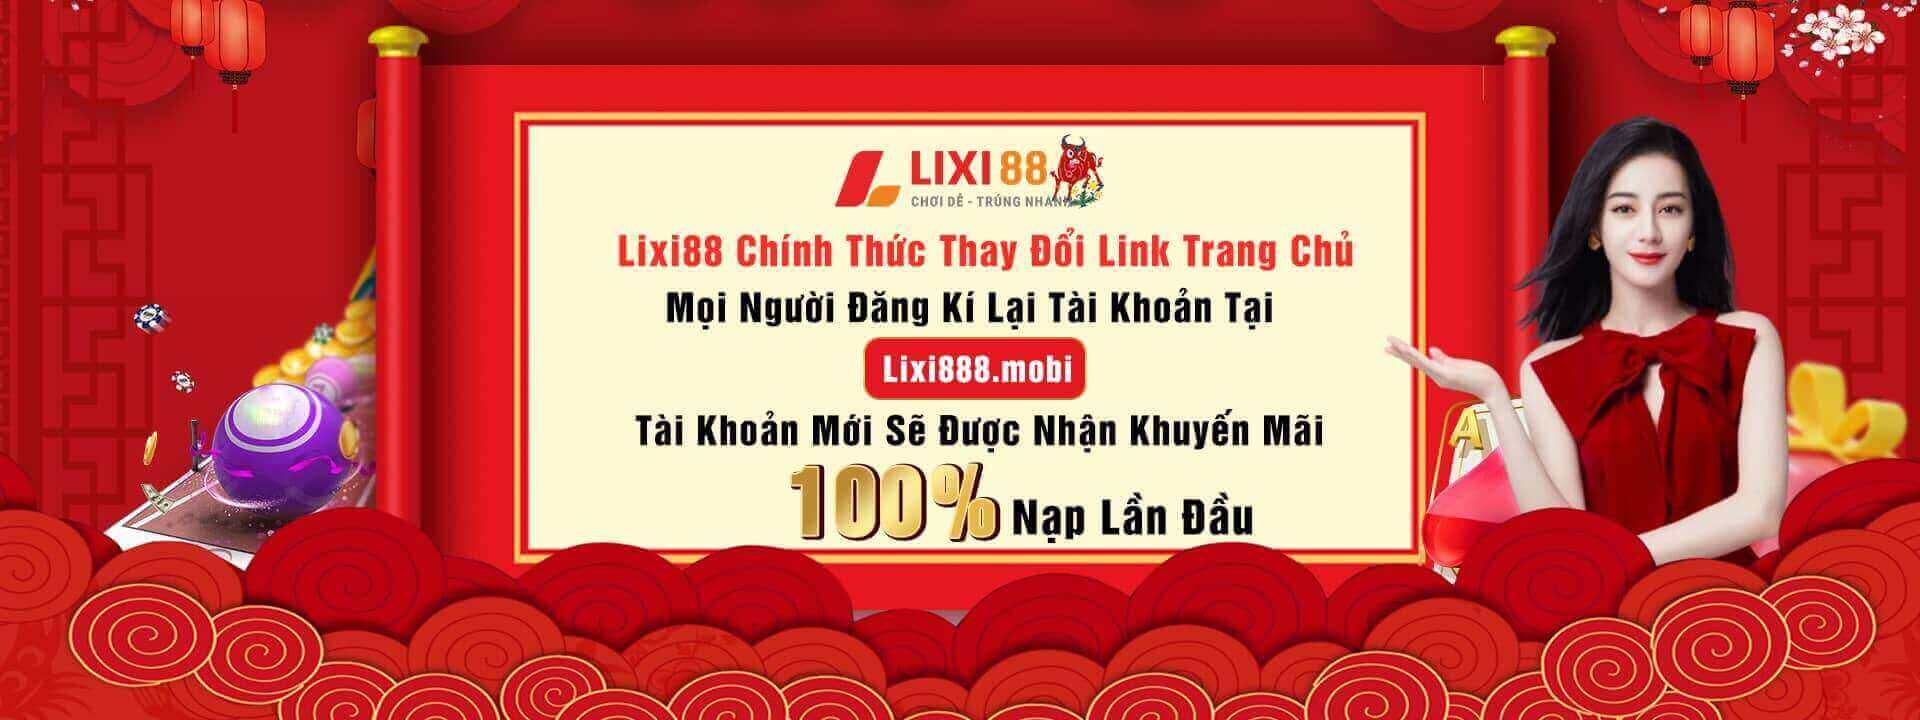 Thông báo Lixi88 chính thức thay đổi link trang chủ thành Lixi88.mobi